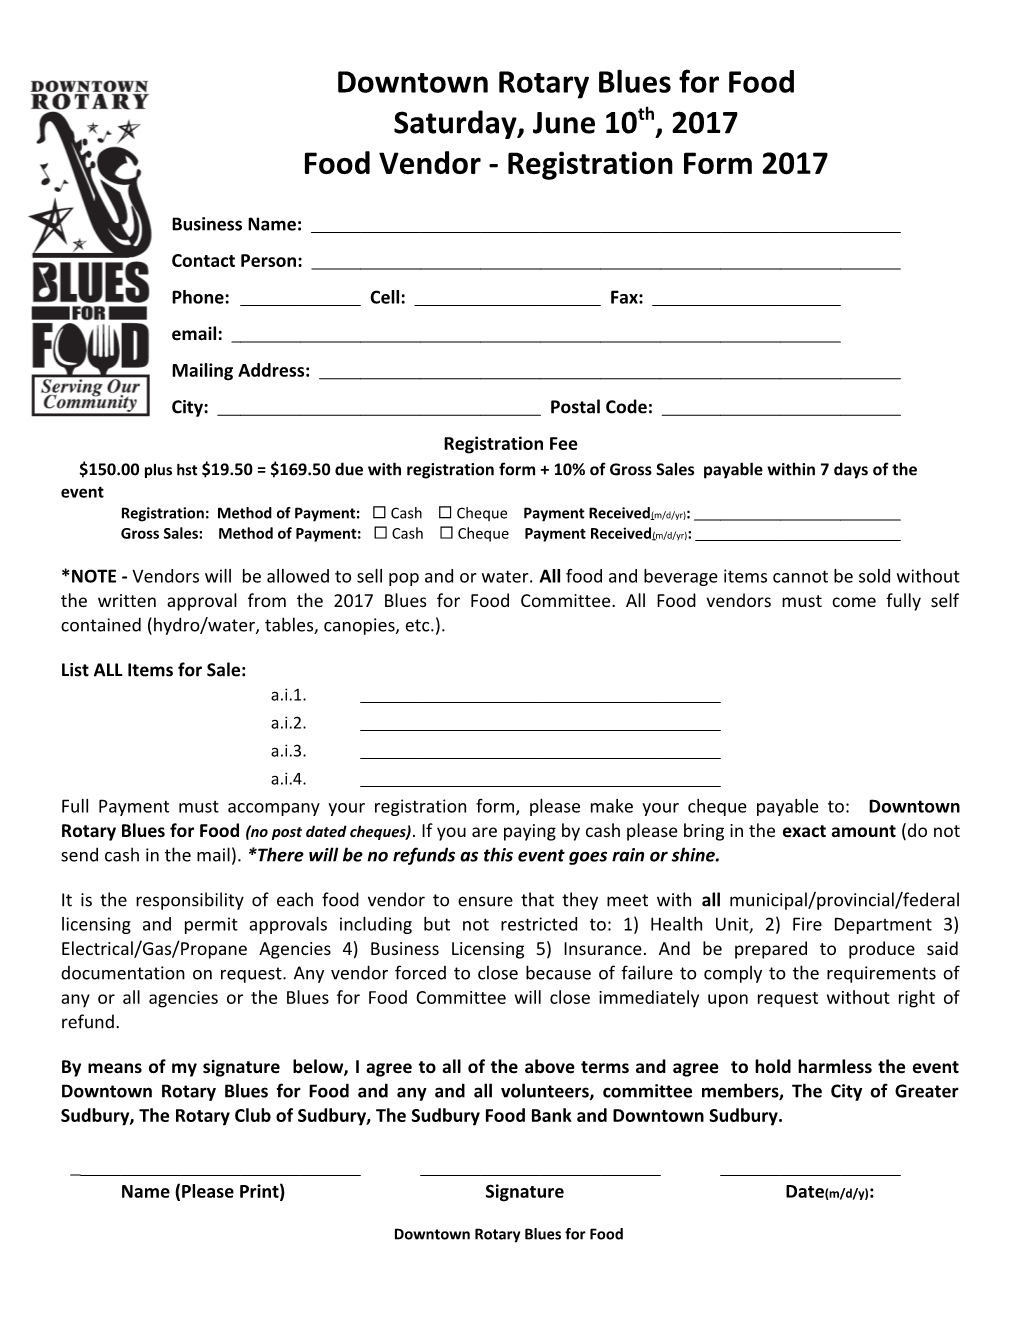 Food Vendor - Registration Form2017